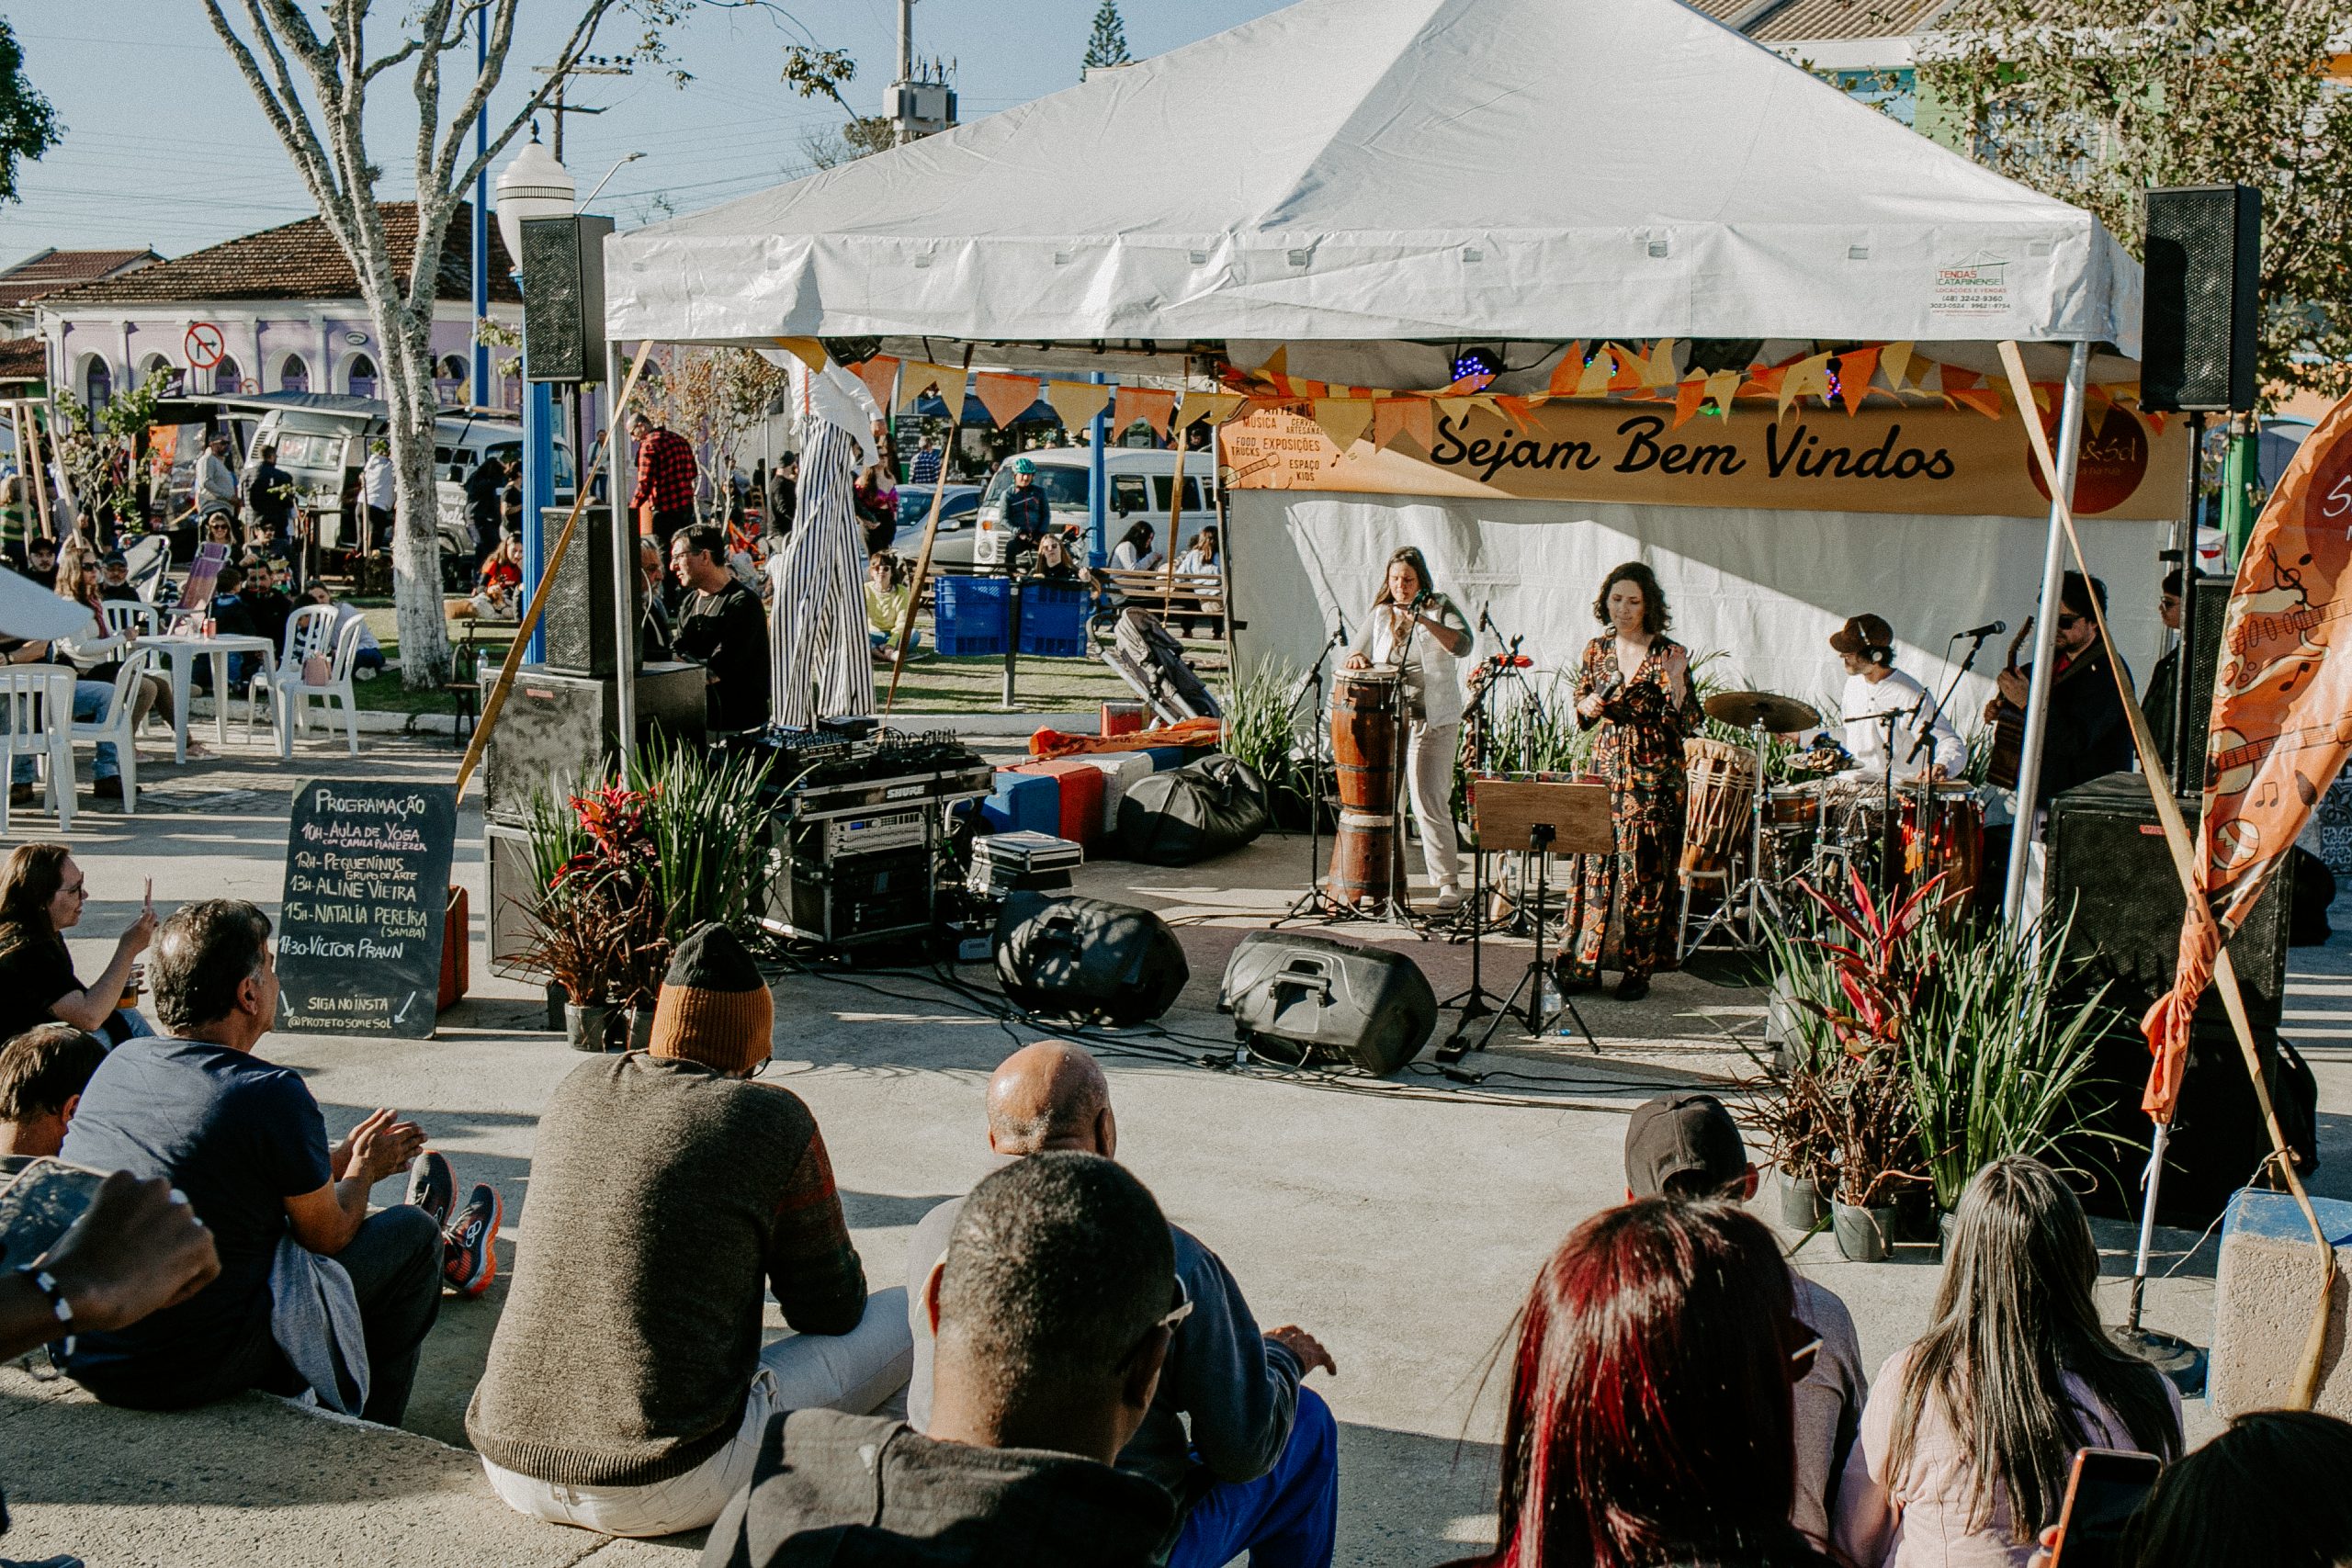 Domingo tem Som & Sol: Música na Rua em Porto Belo